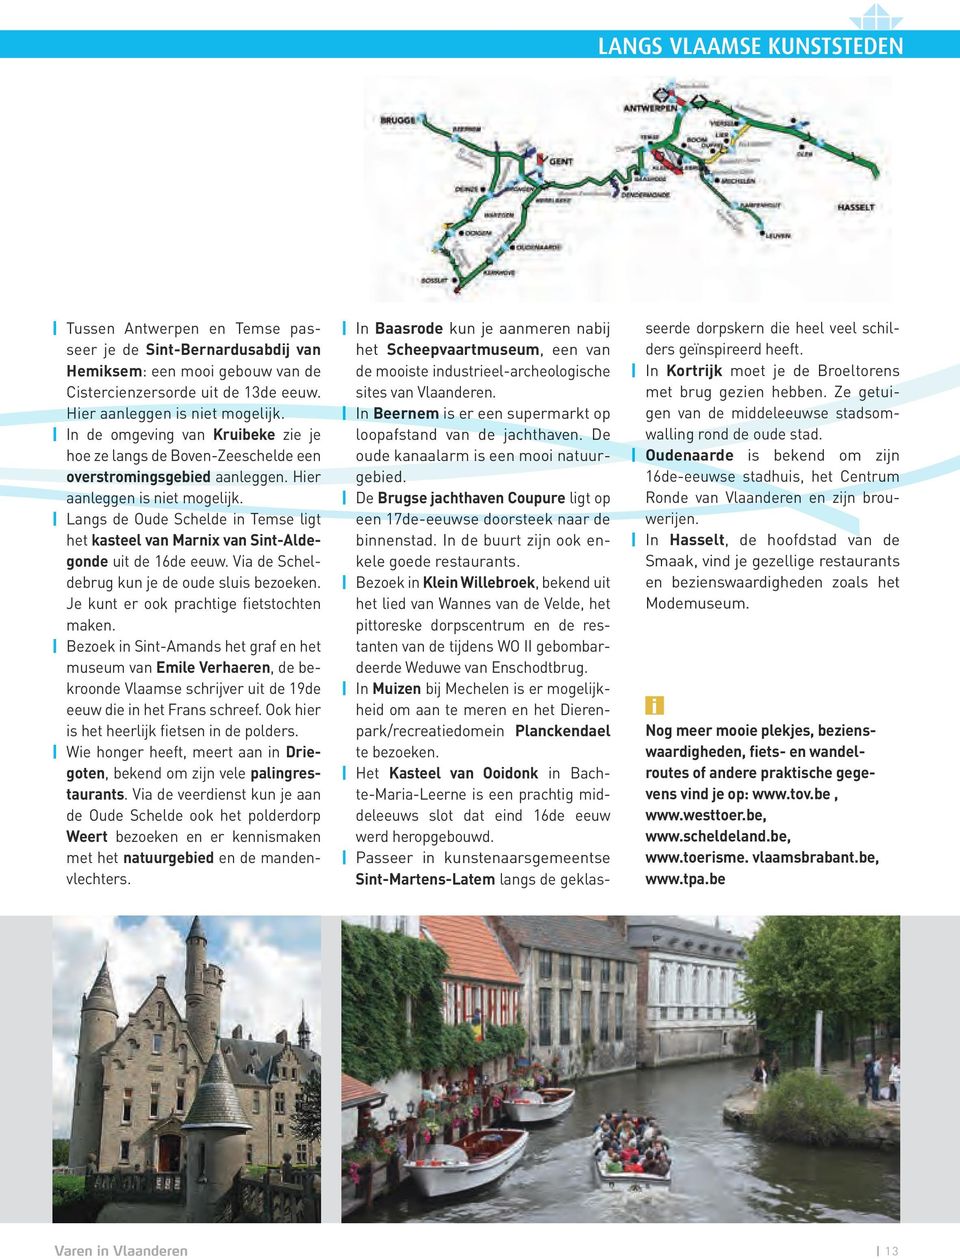 Langs de Oude Schelde in Temse ligt het kasteel van Marnix van Sint-Aldegonde uit de 16de eeuw. Via de Scheldebrug kun je de oude sluis bezoeken. Je kunt er ook prachtige fietstochten maken.